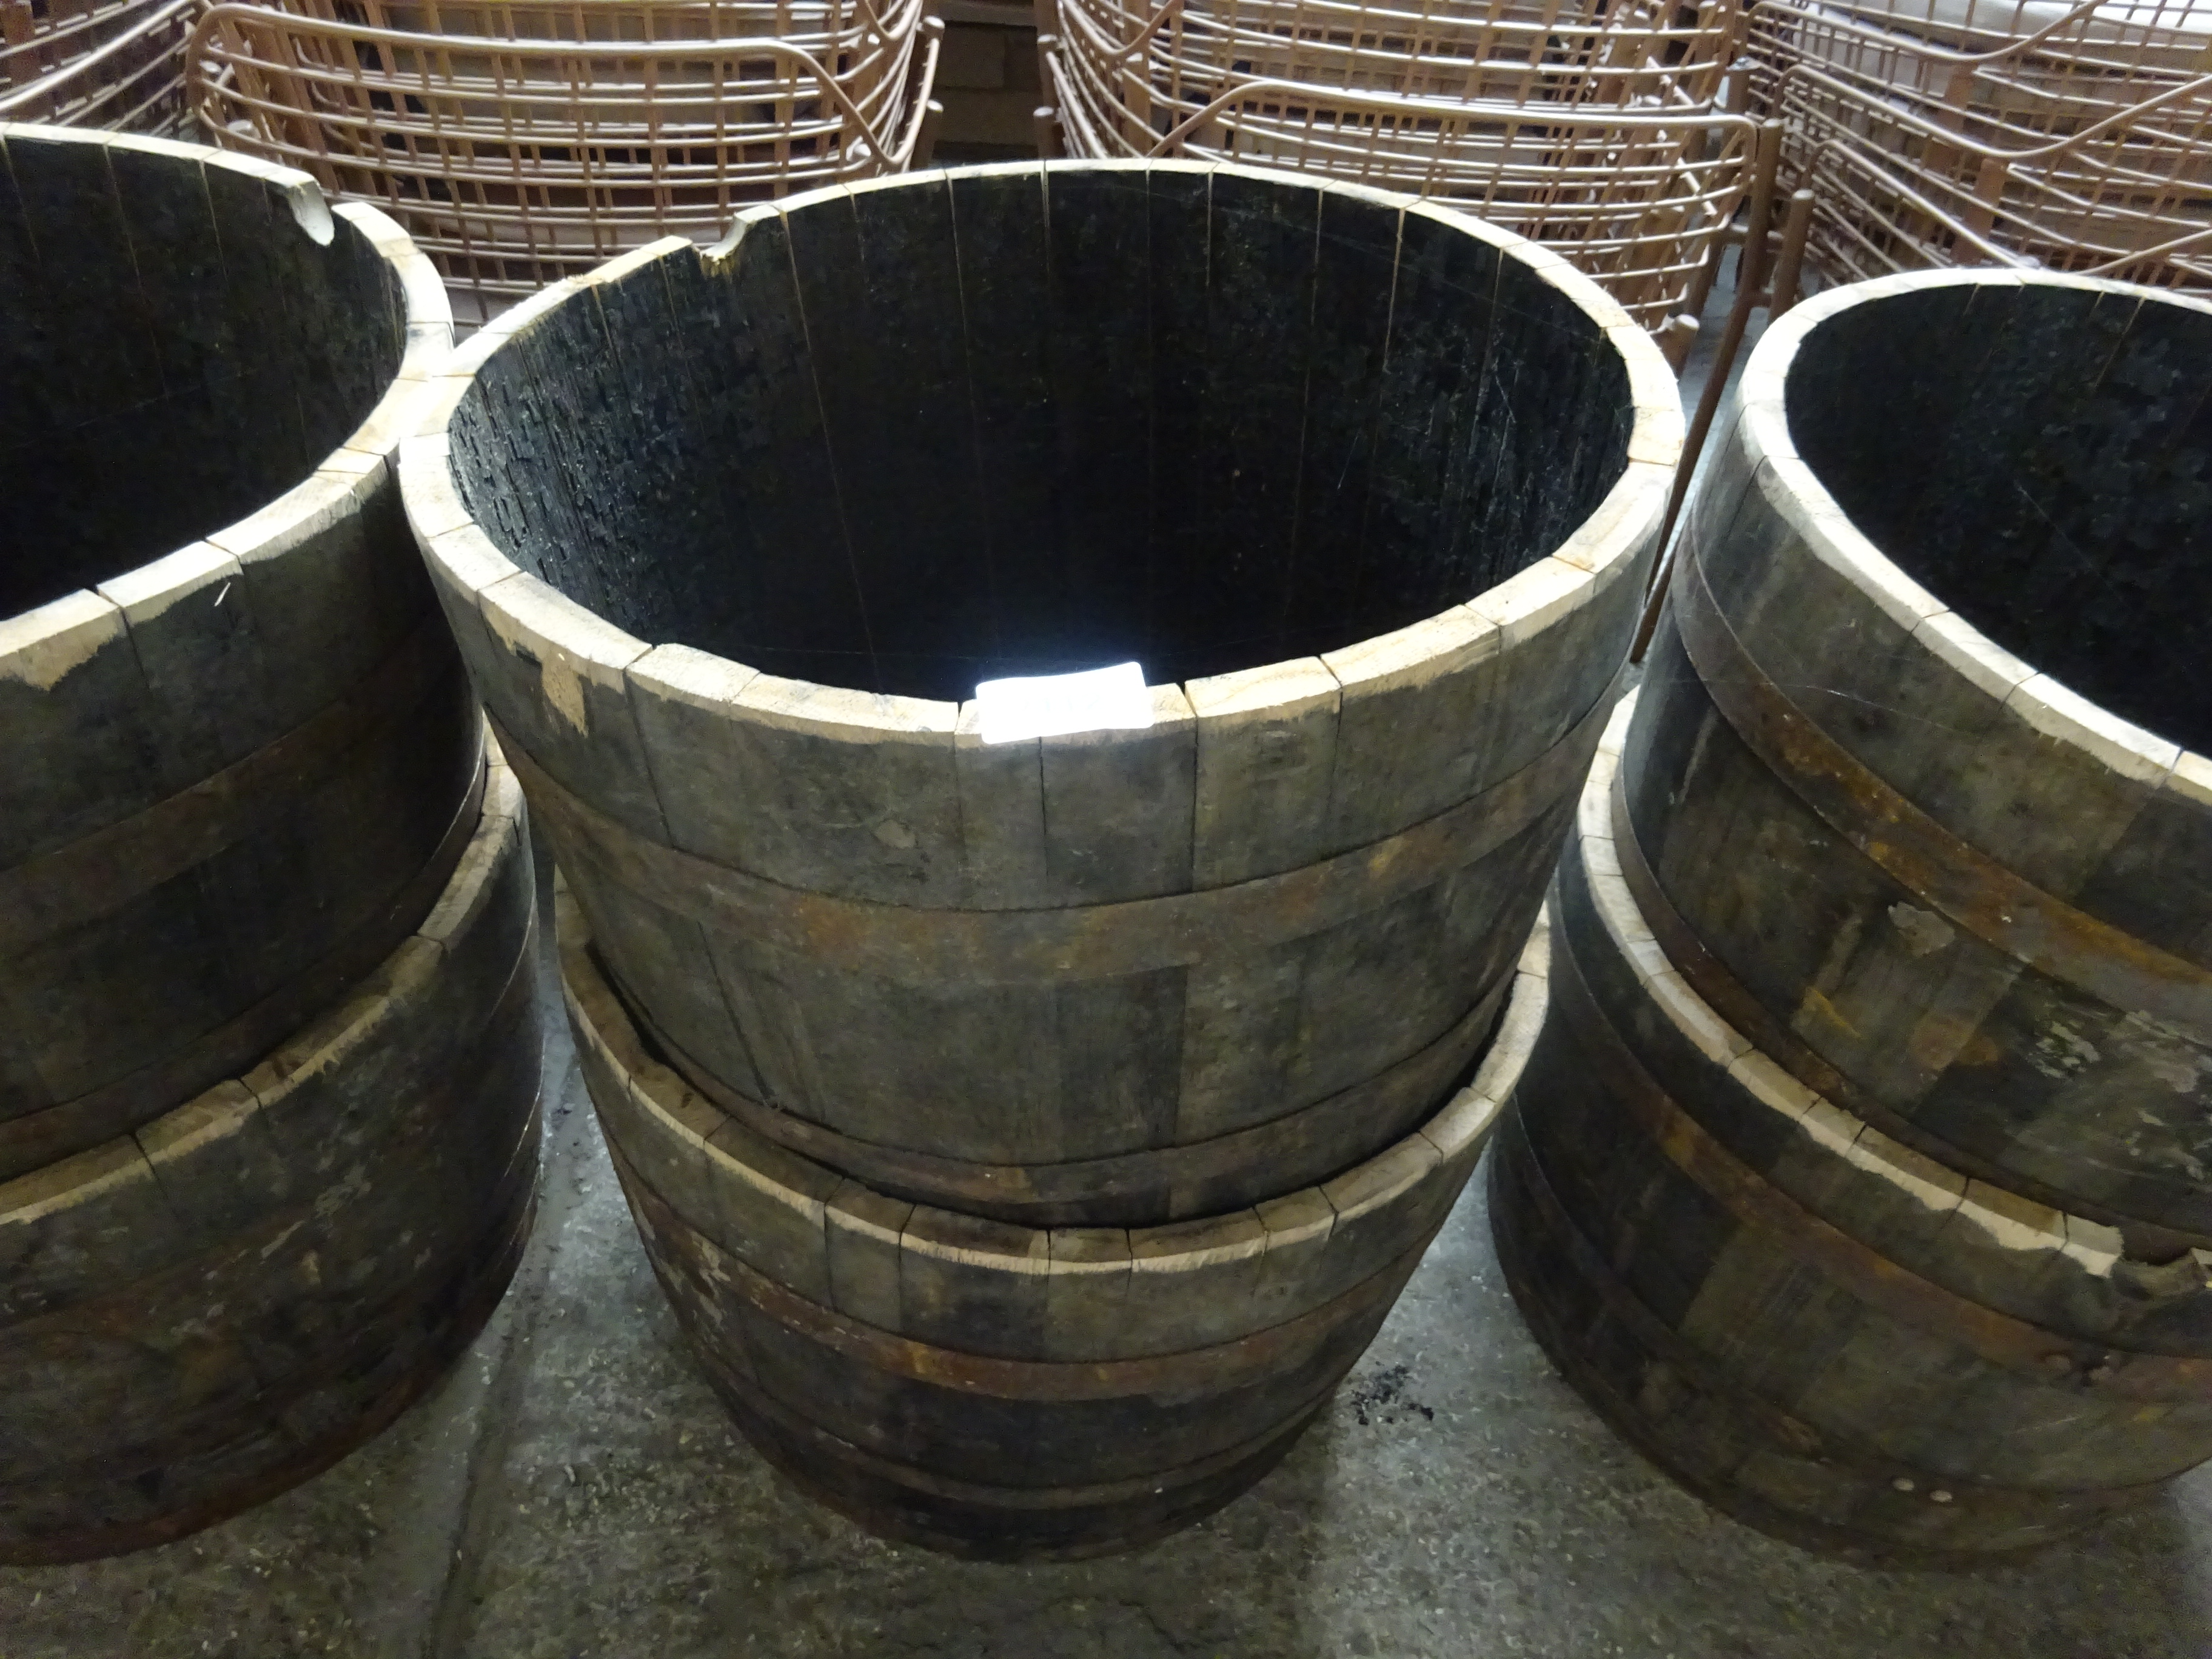 Two half barrels.